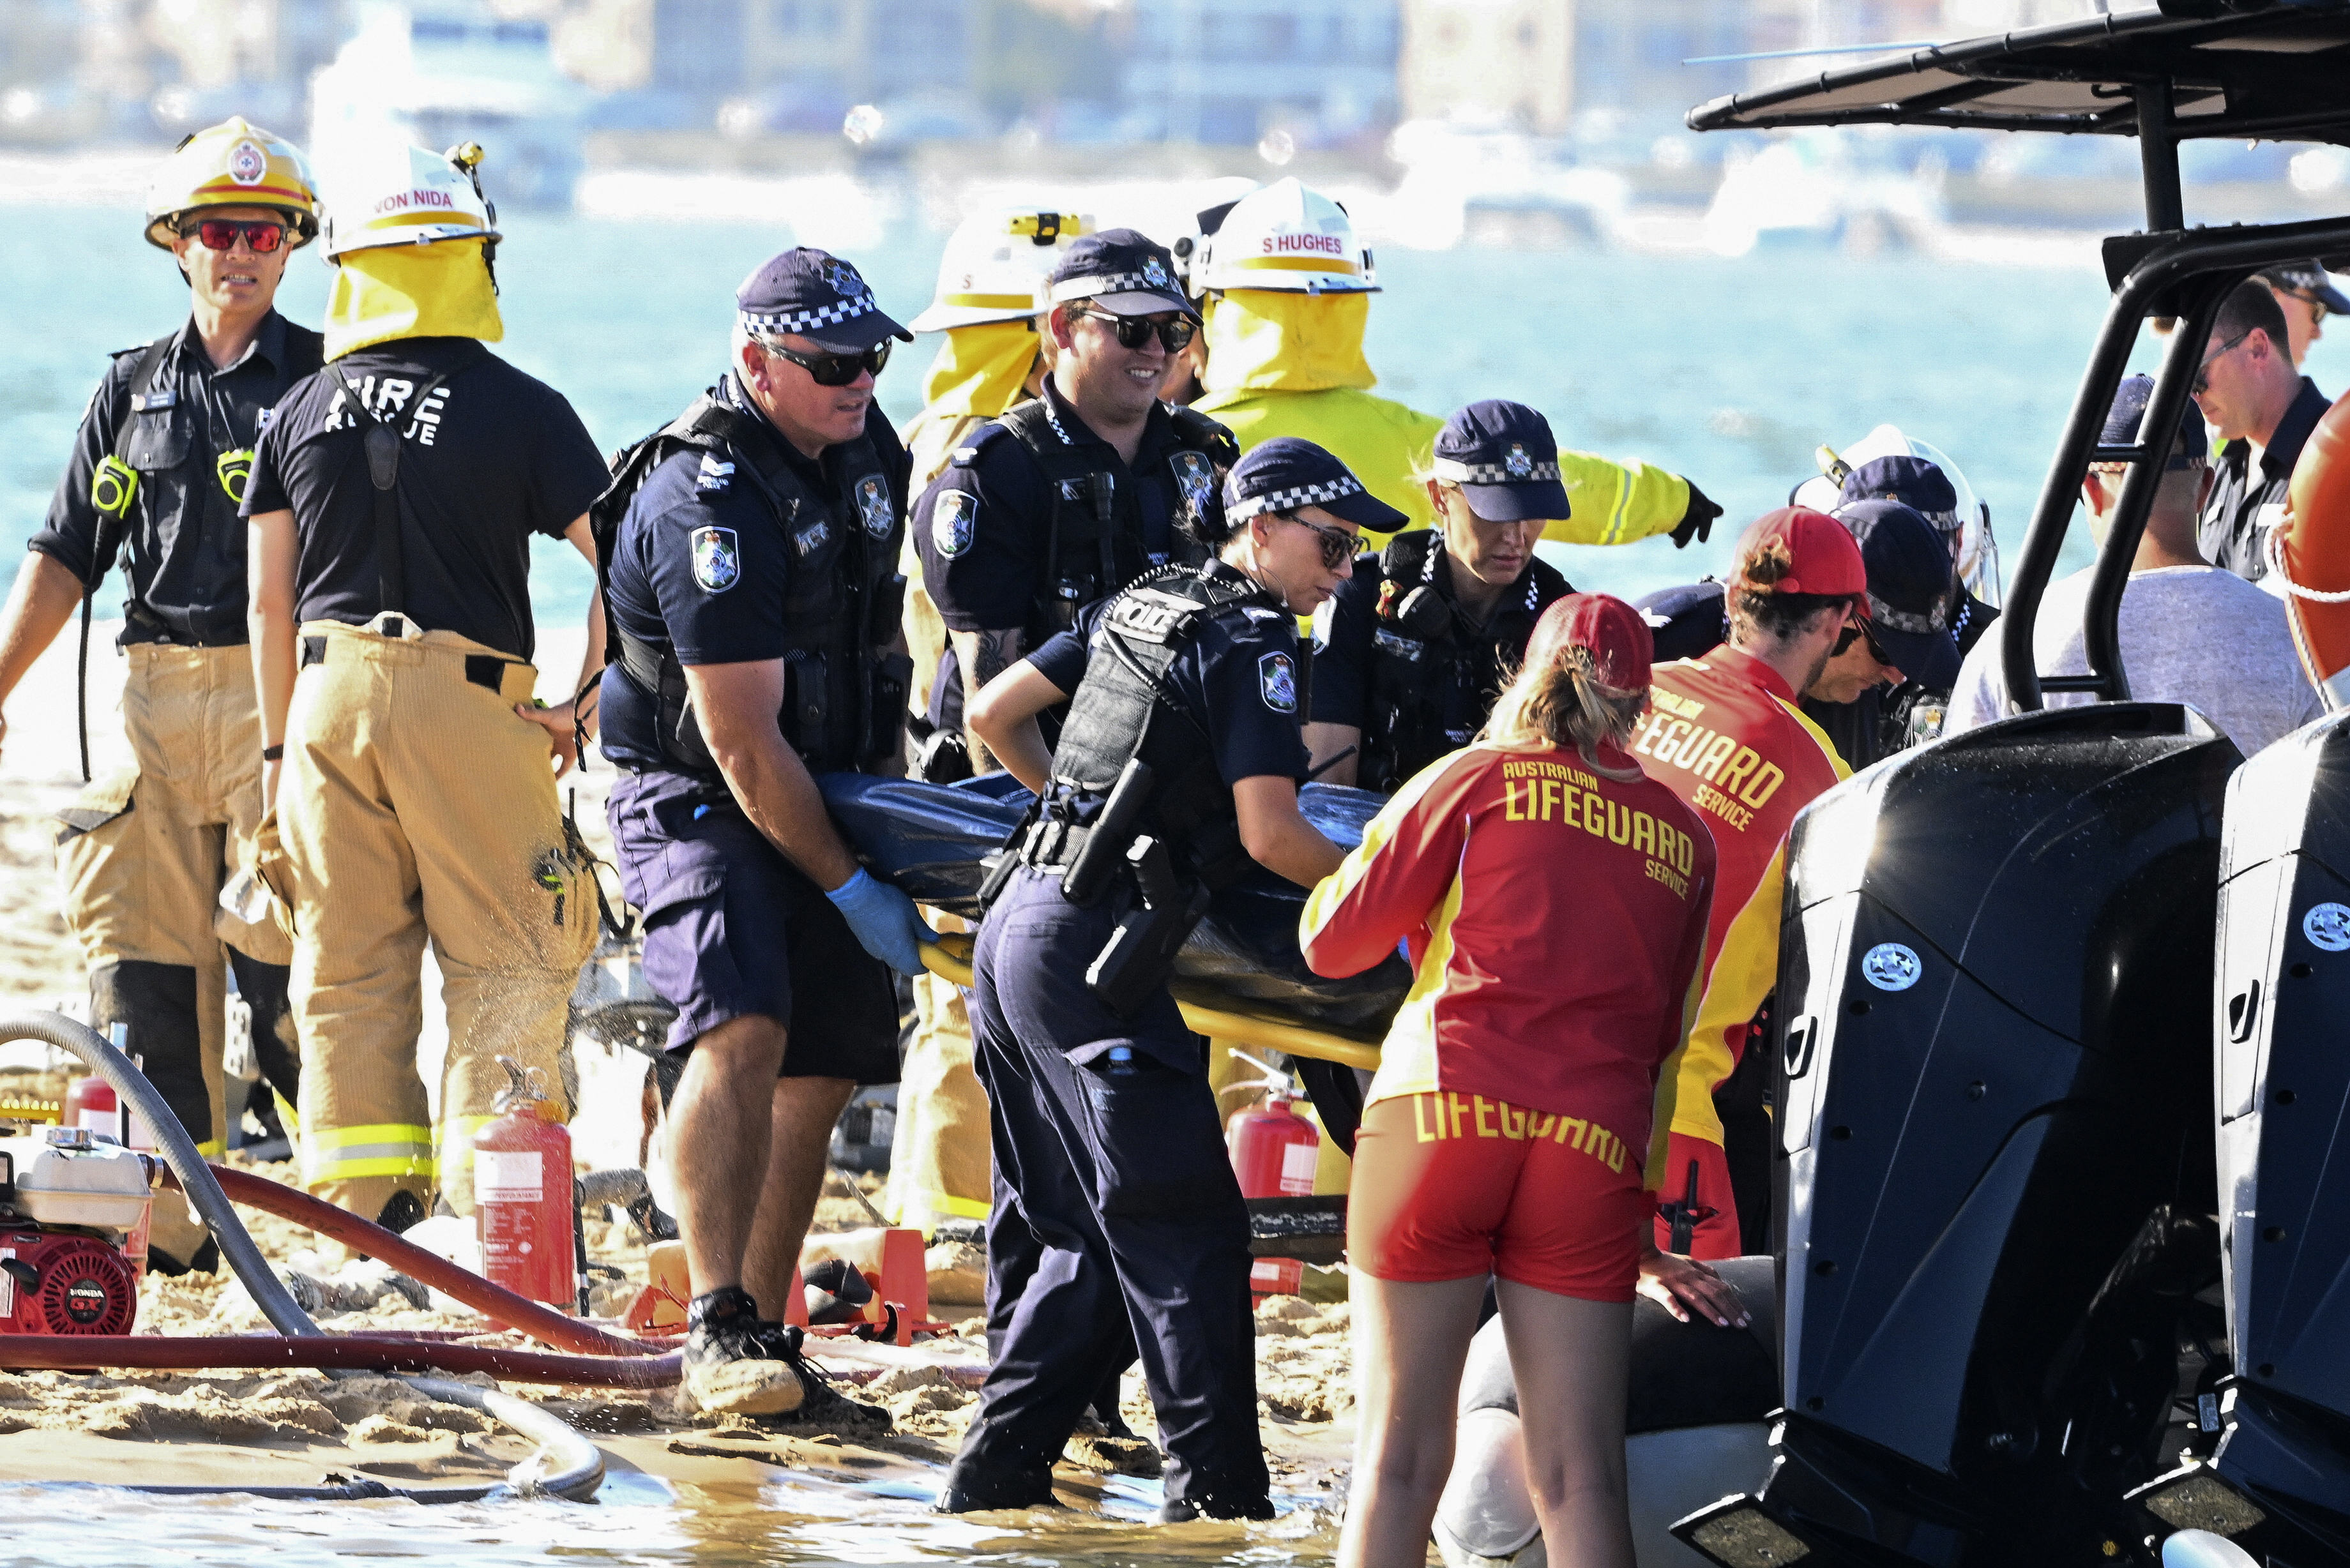 Los trabajadores de emergencia retiran un cuerpo de la escena de la colisión de un helicóptero cerca de Seaworld, en Gold Coast, Australia, el lunes 2 de enero de 2023.  (Imagen de Dave Hunt/AAP vía AP)

